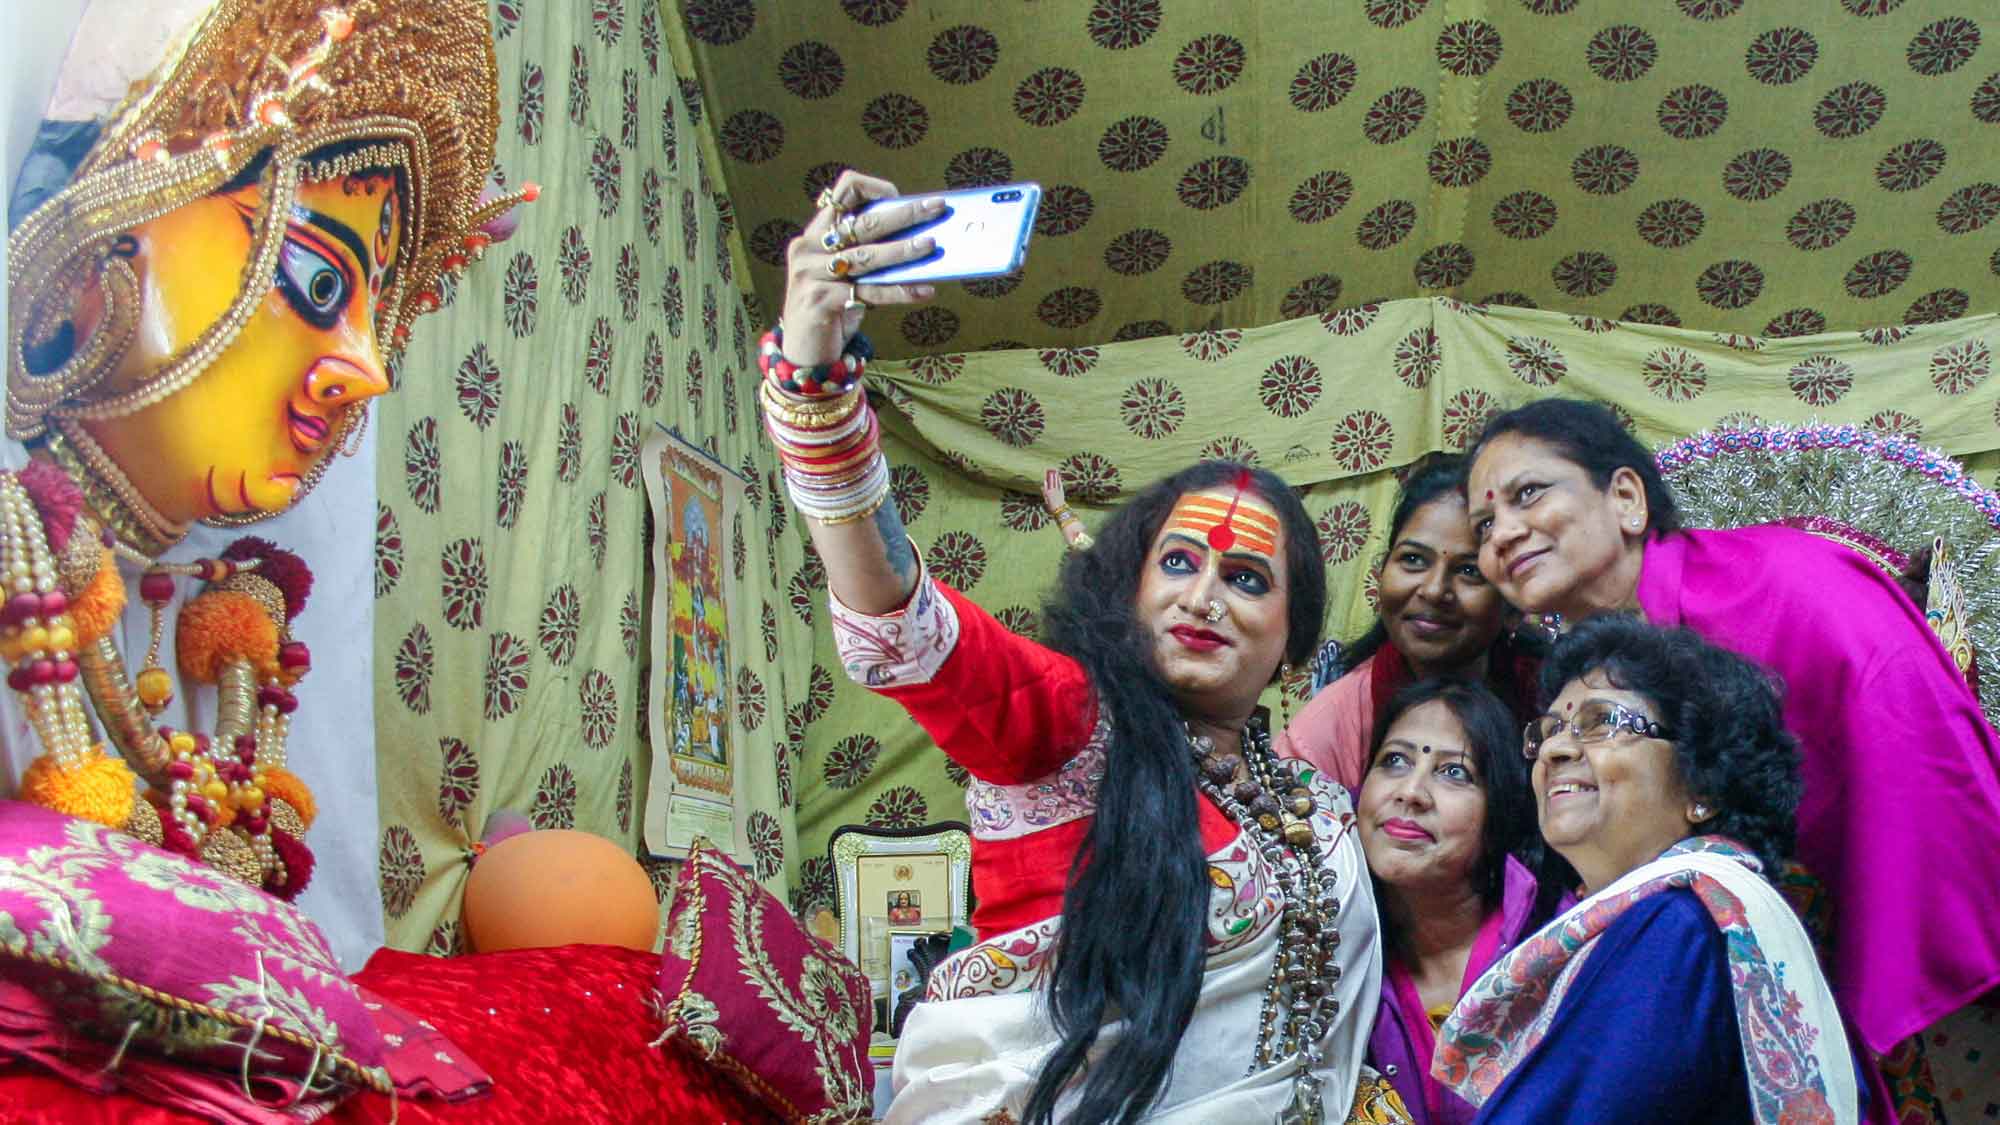 Hijra Pak Sex - India's Third Gender Rises Again â€“ SAPIENS